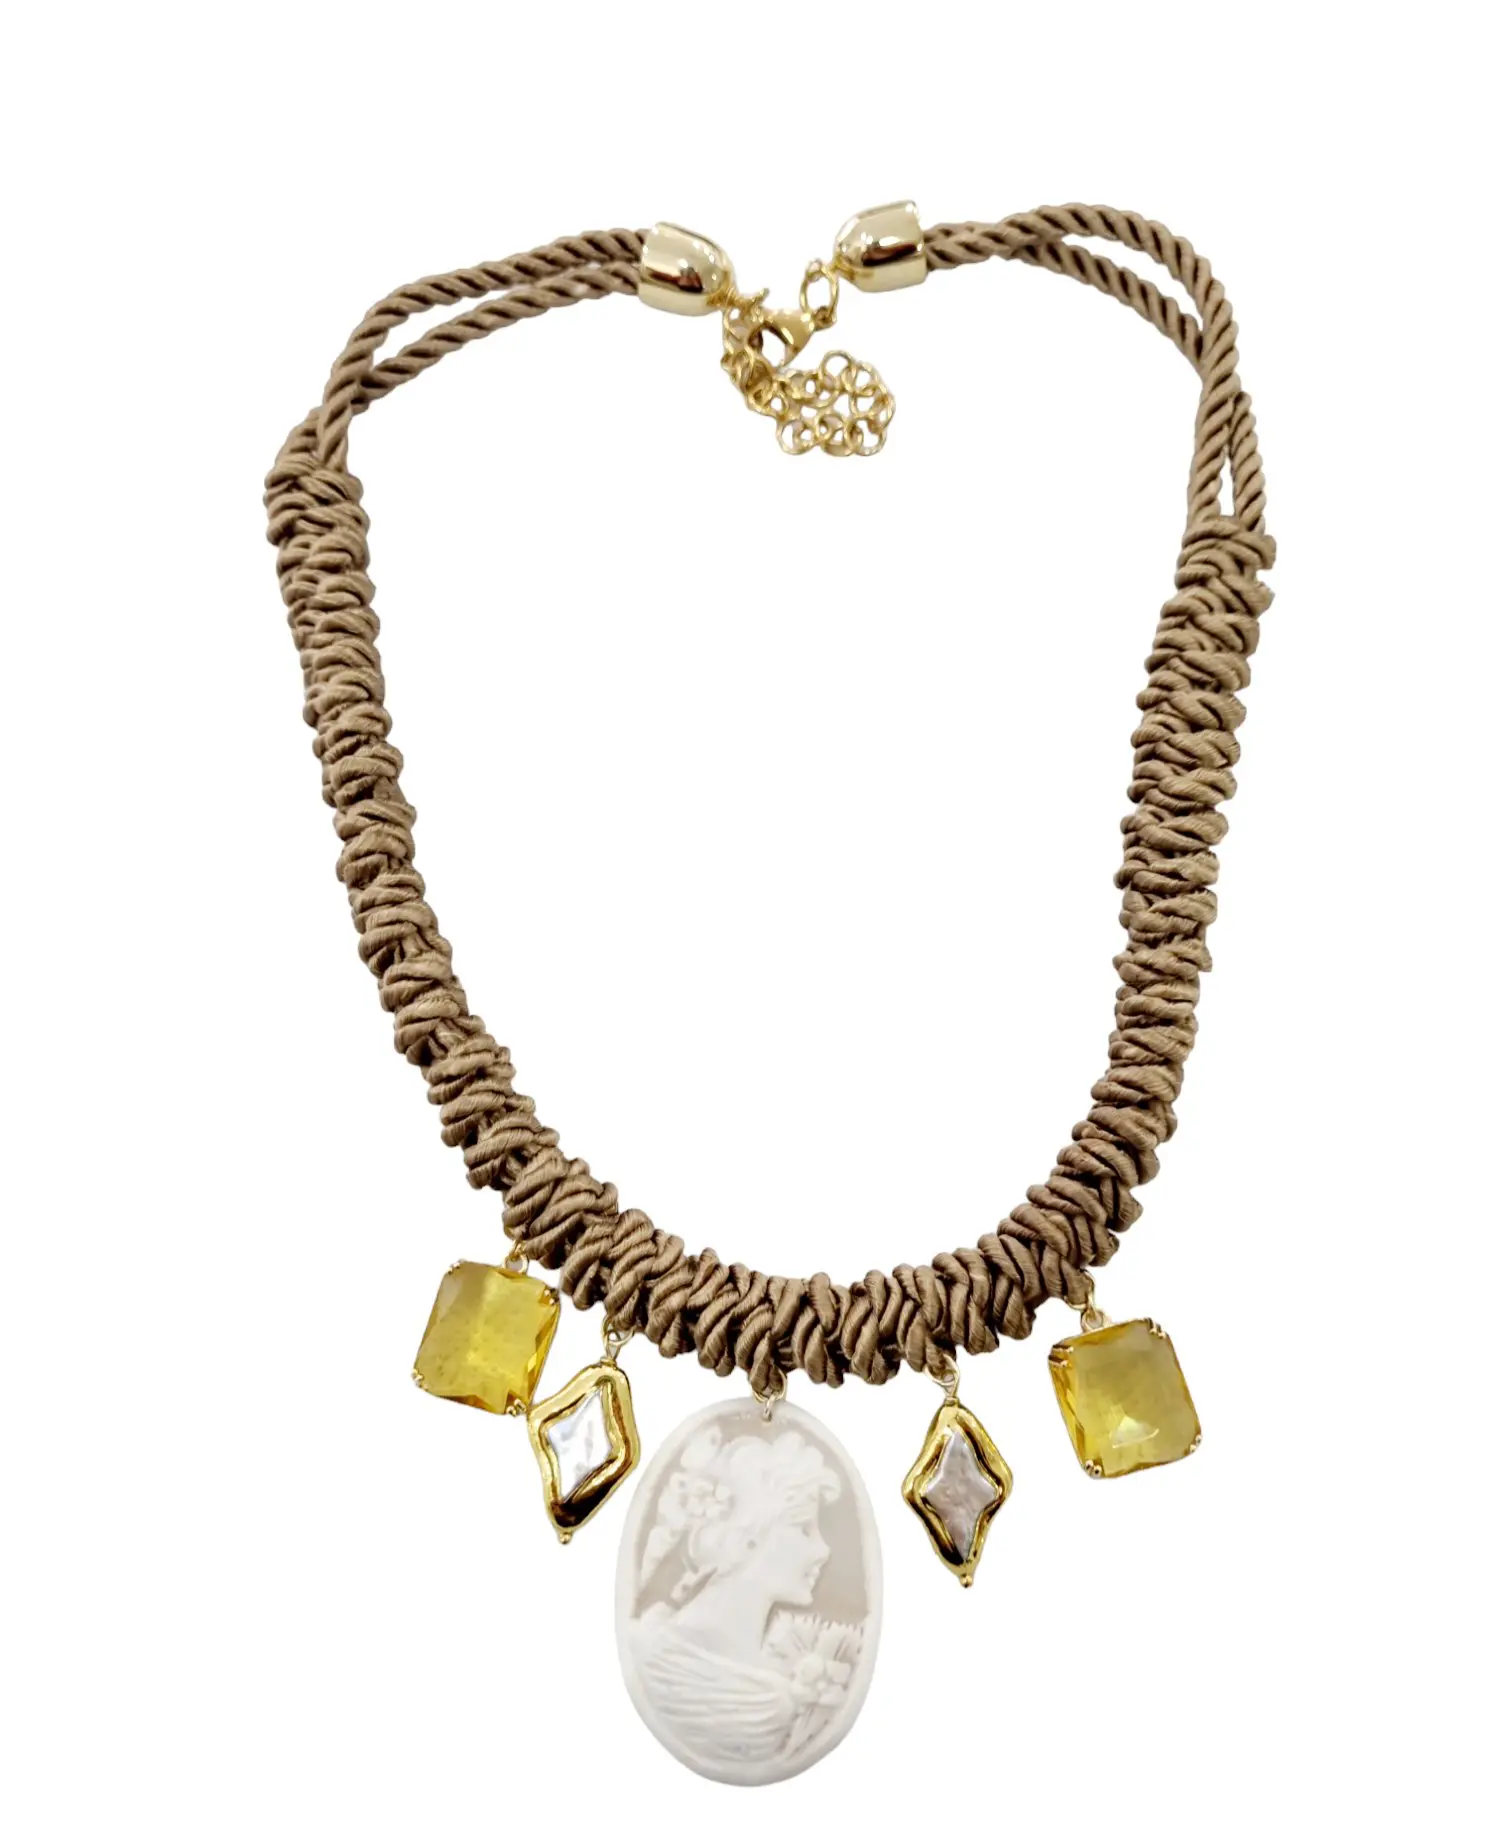 Collana girocollo regolabile con cammeo, perle e cristalli – Lunghezza 54cm